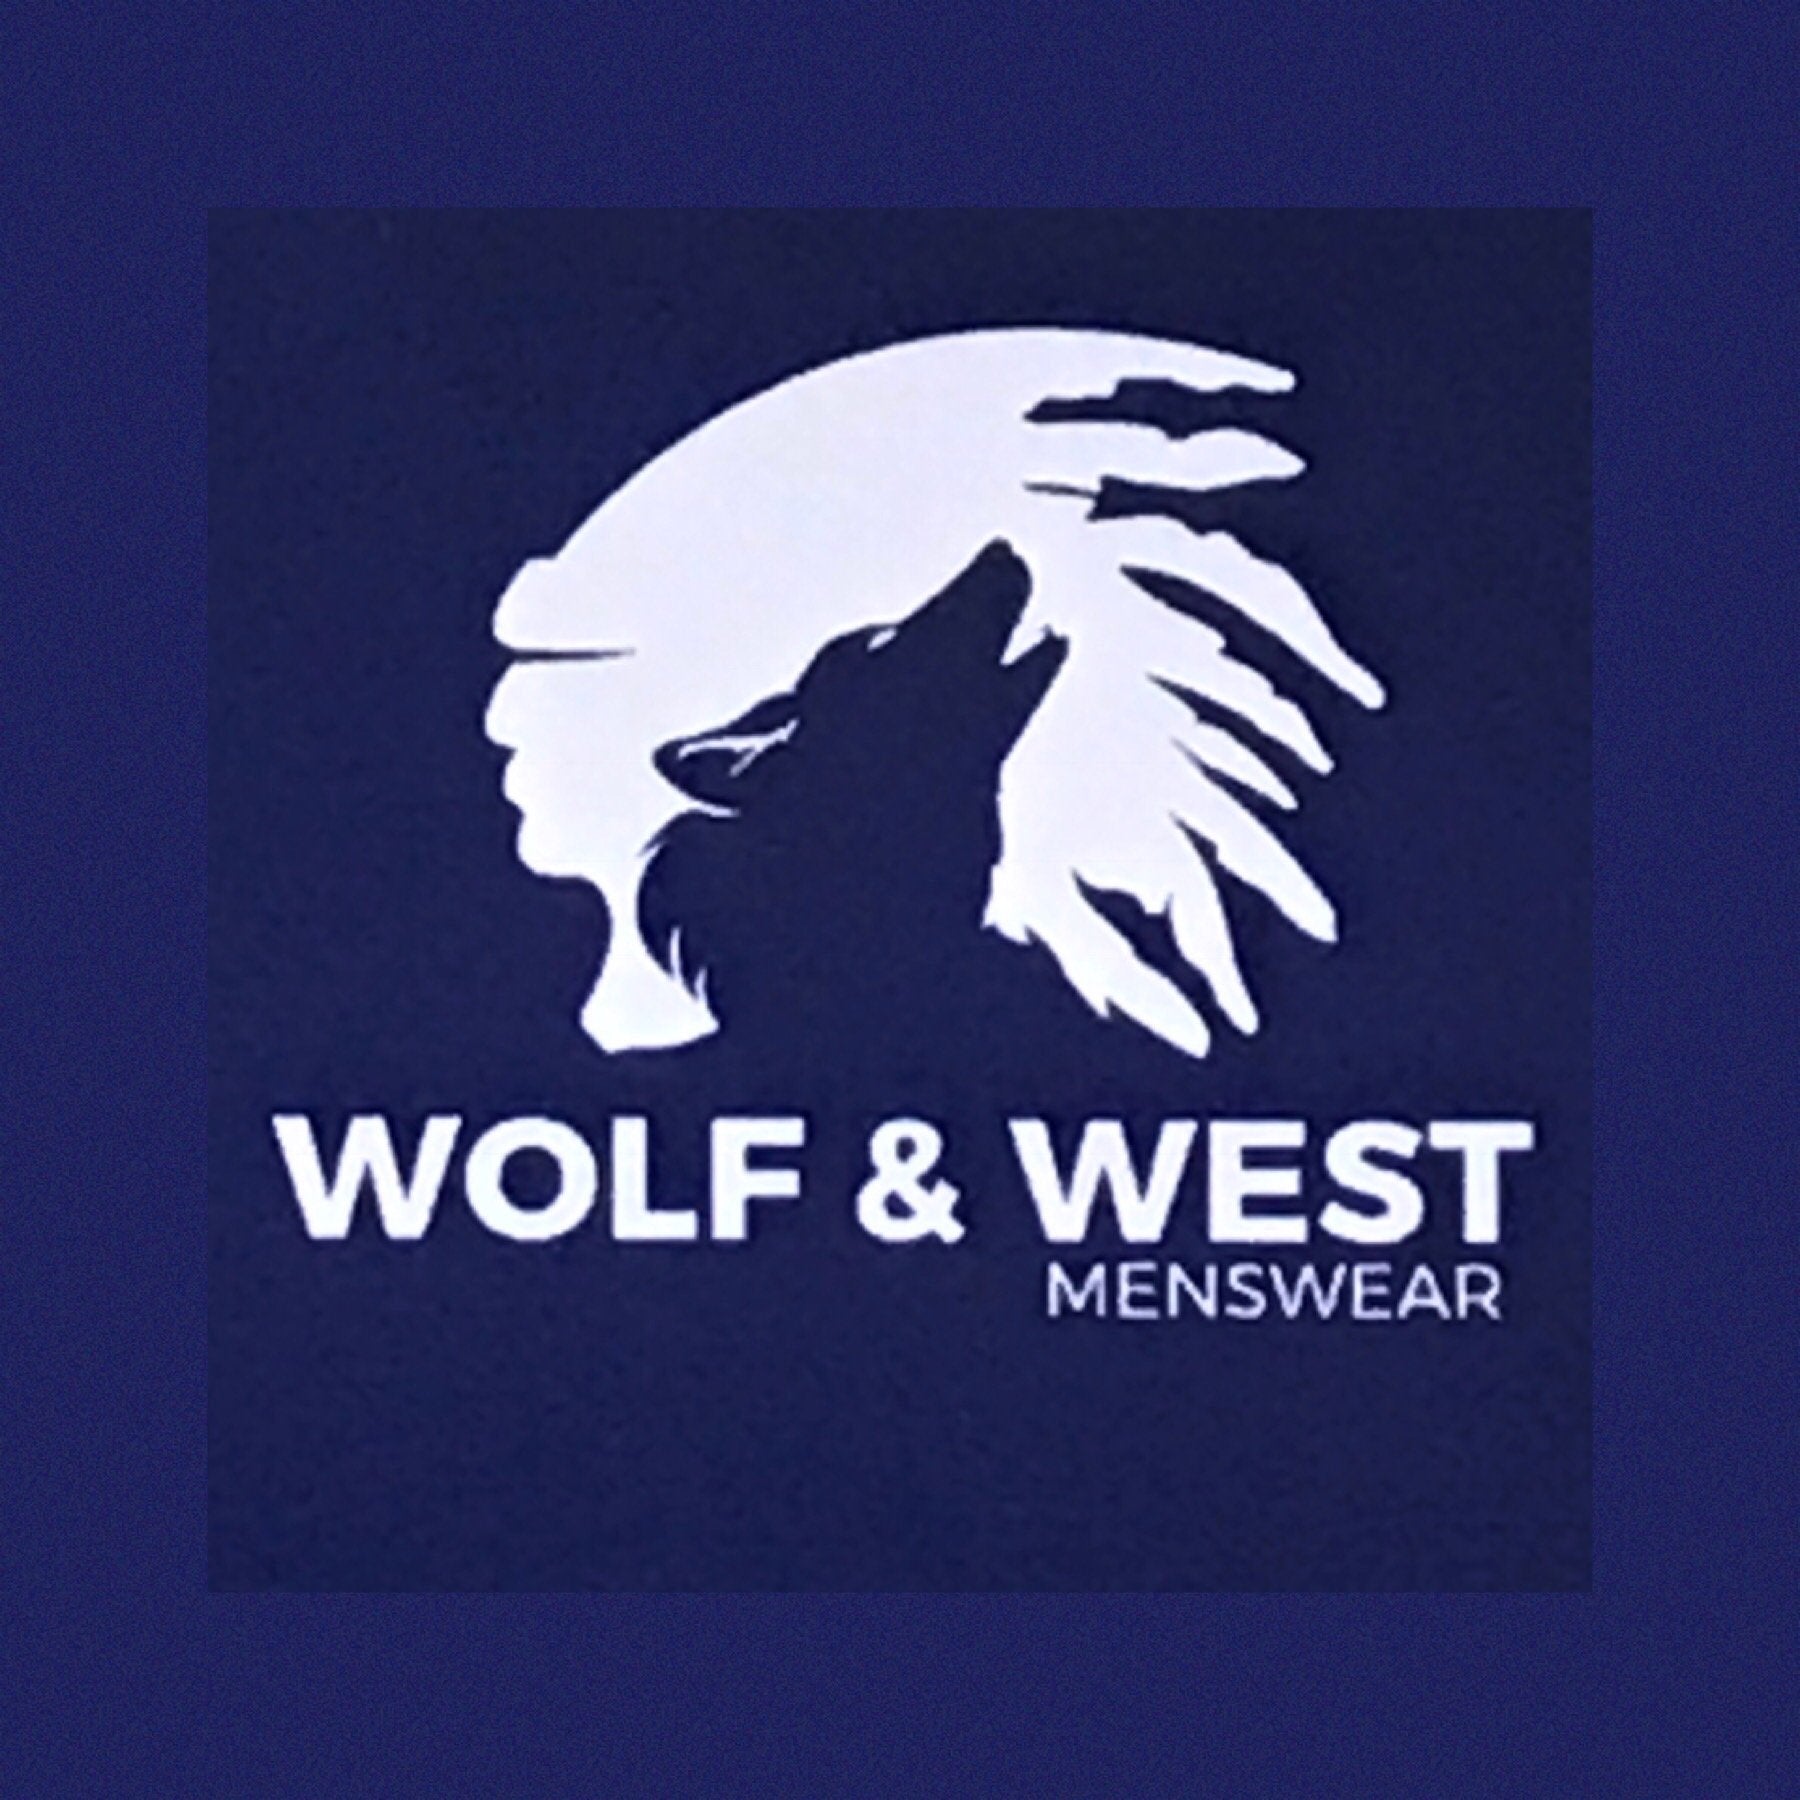 Wolf & West Menswear